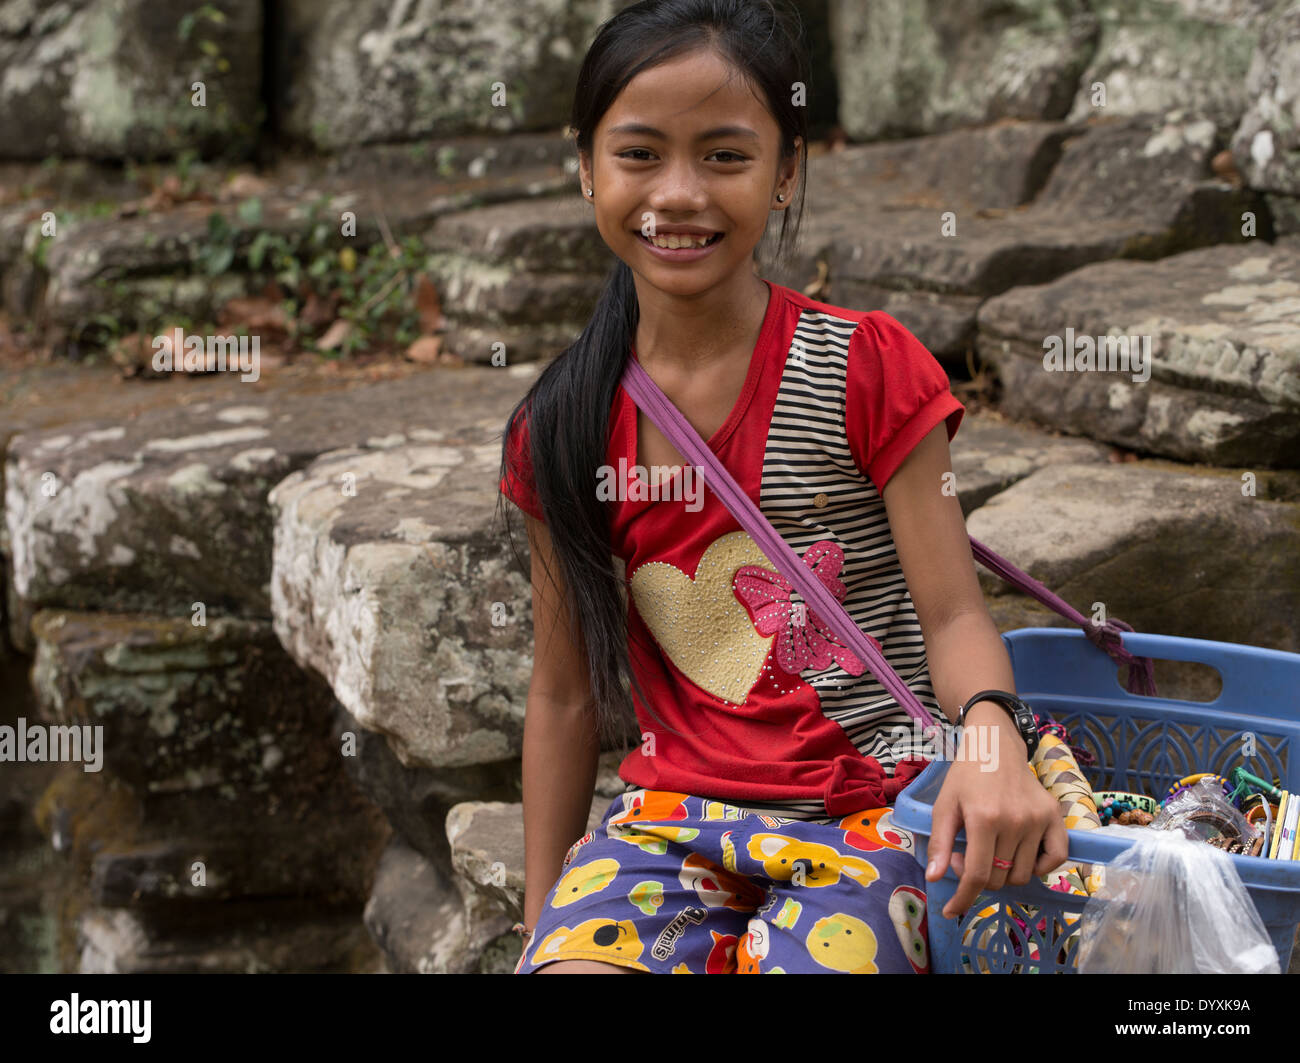 Jeune fille qui vend des souvenirs à Banteay Kdei monastère bouddhiste / Temple ruins. Siem Reap, Cambodge Banque D'Images